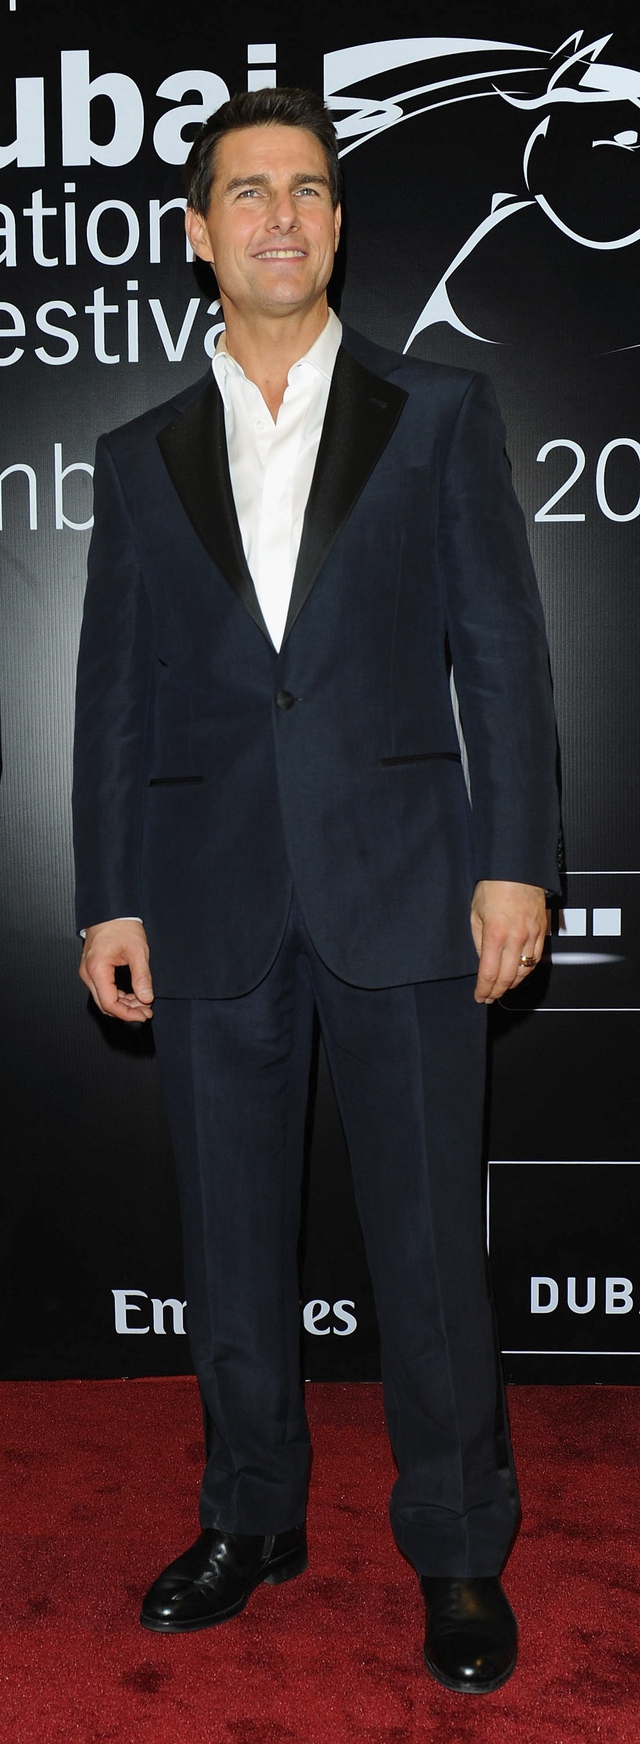 조르조 아르마니를 즐겨 입는 톰 크루즈. 신세계인터내셔날 제공.